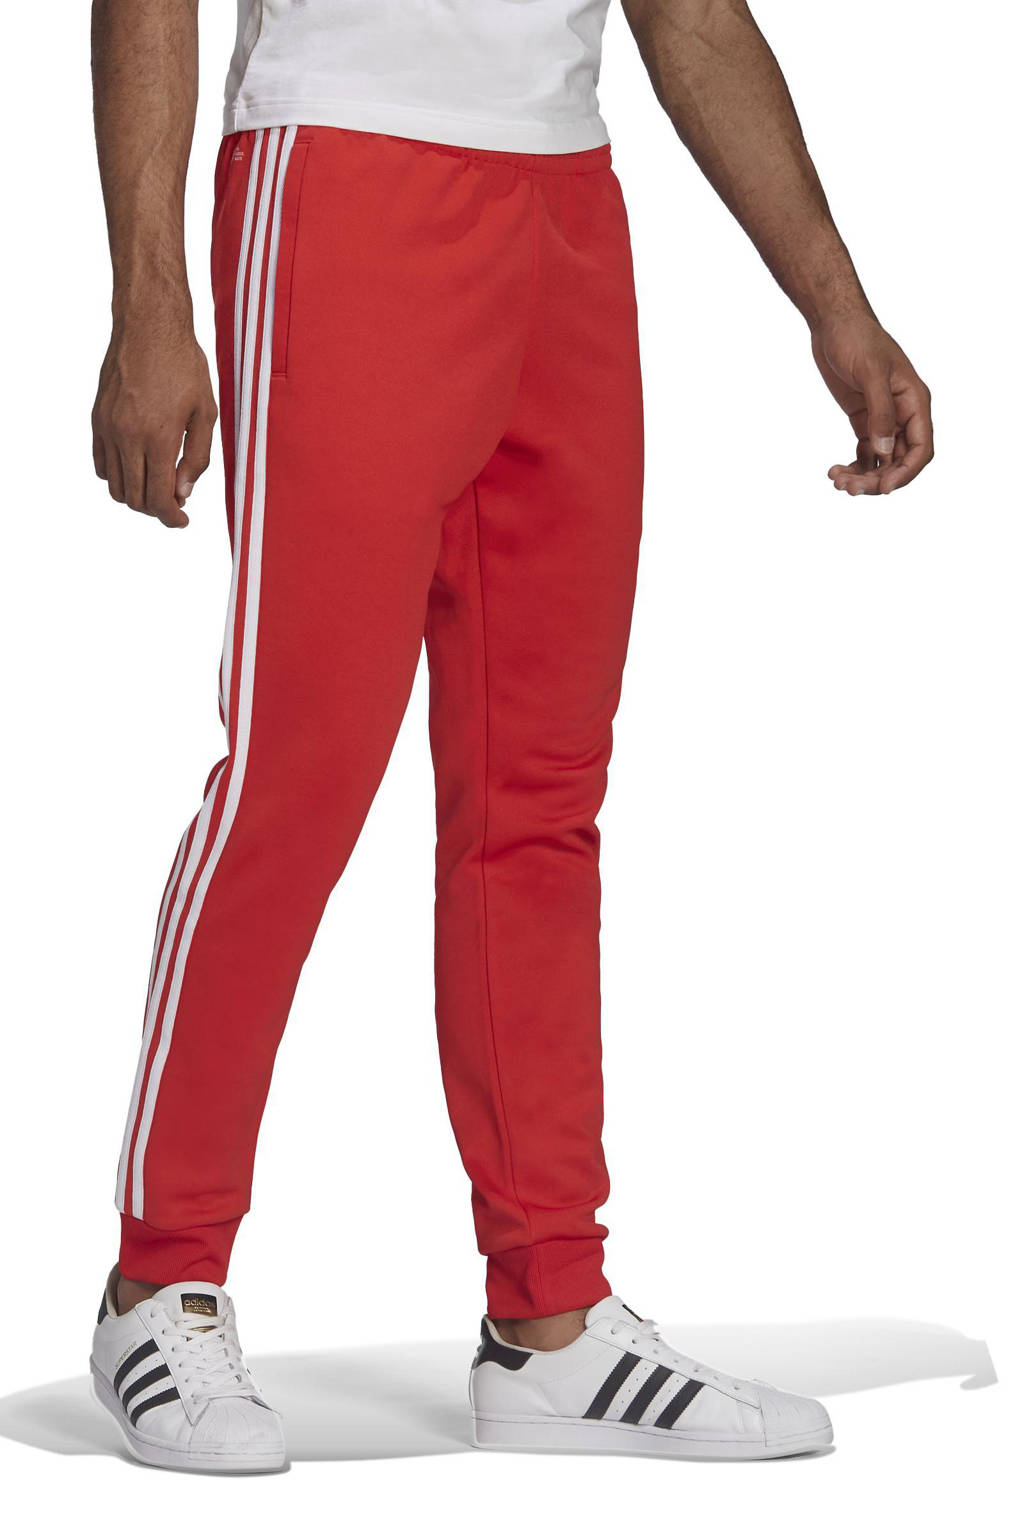 toediening beoefenaar Bejaarden adidas Originals Superstar Adicolor trainingsbroek rood | wehkamp